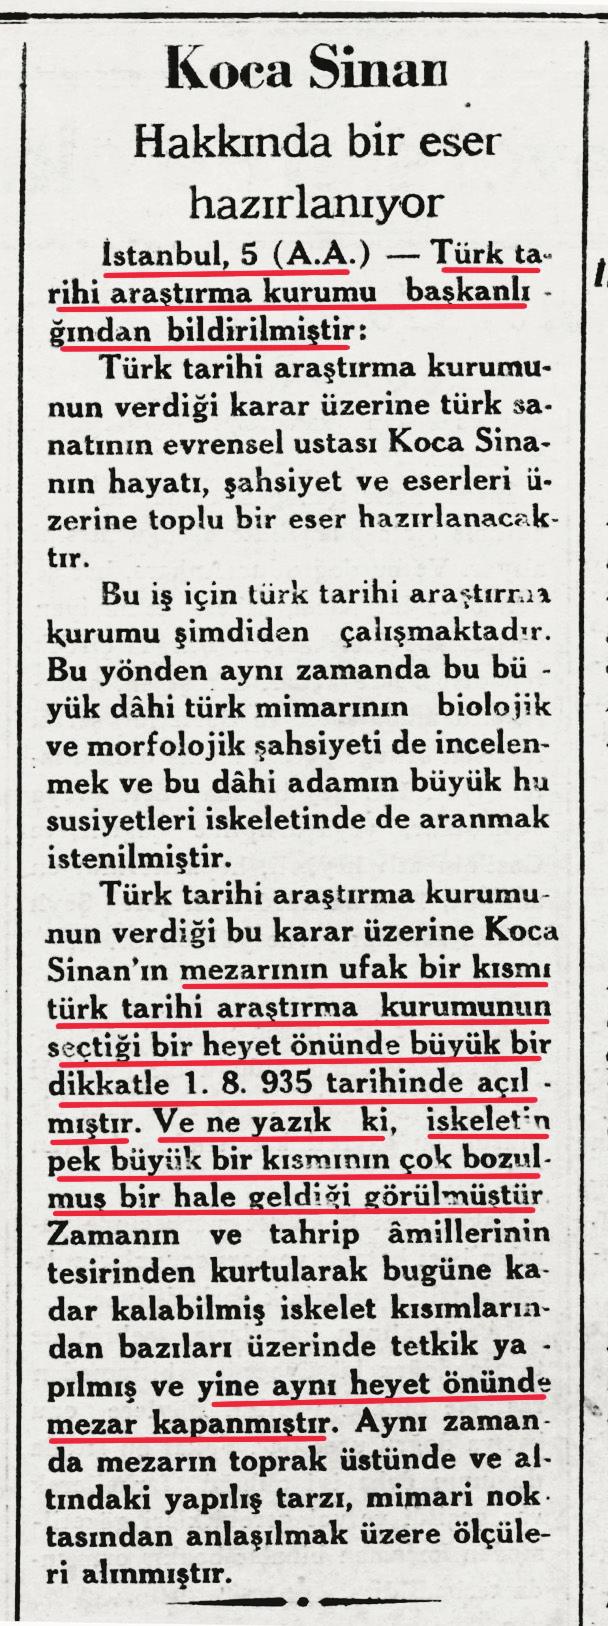 Almanyas, Kafatasç Irkç l k, Soyk r mc l k, Faflizm olgular n ça r flt rd ndan, 1998'de ortaya at lan bu iddia, Atatürk'ü ve kurucusu oldu u Türkiye Cumhuriyeti'ni Kafatasç, Irkç, Soyk r mc, Faflist